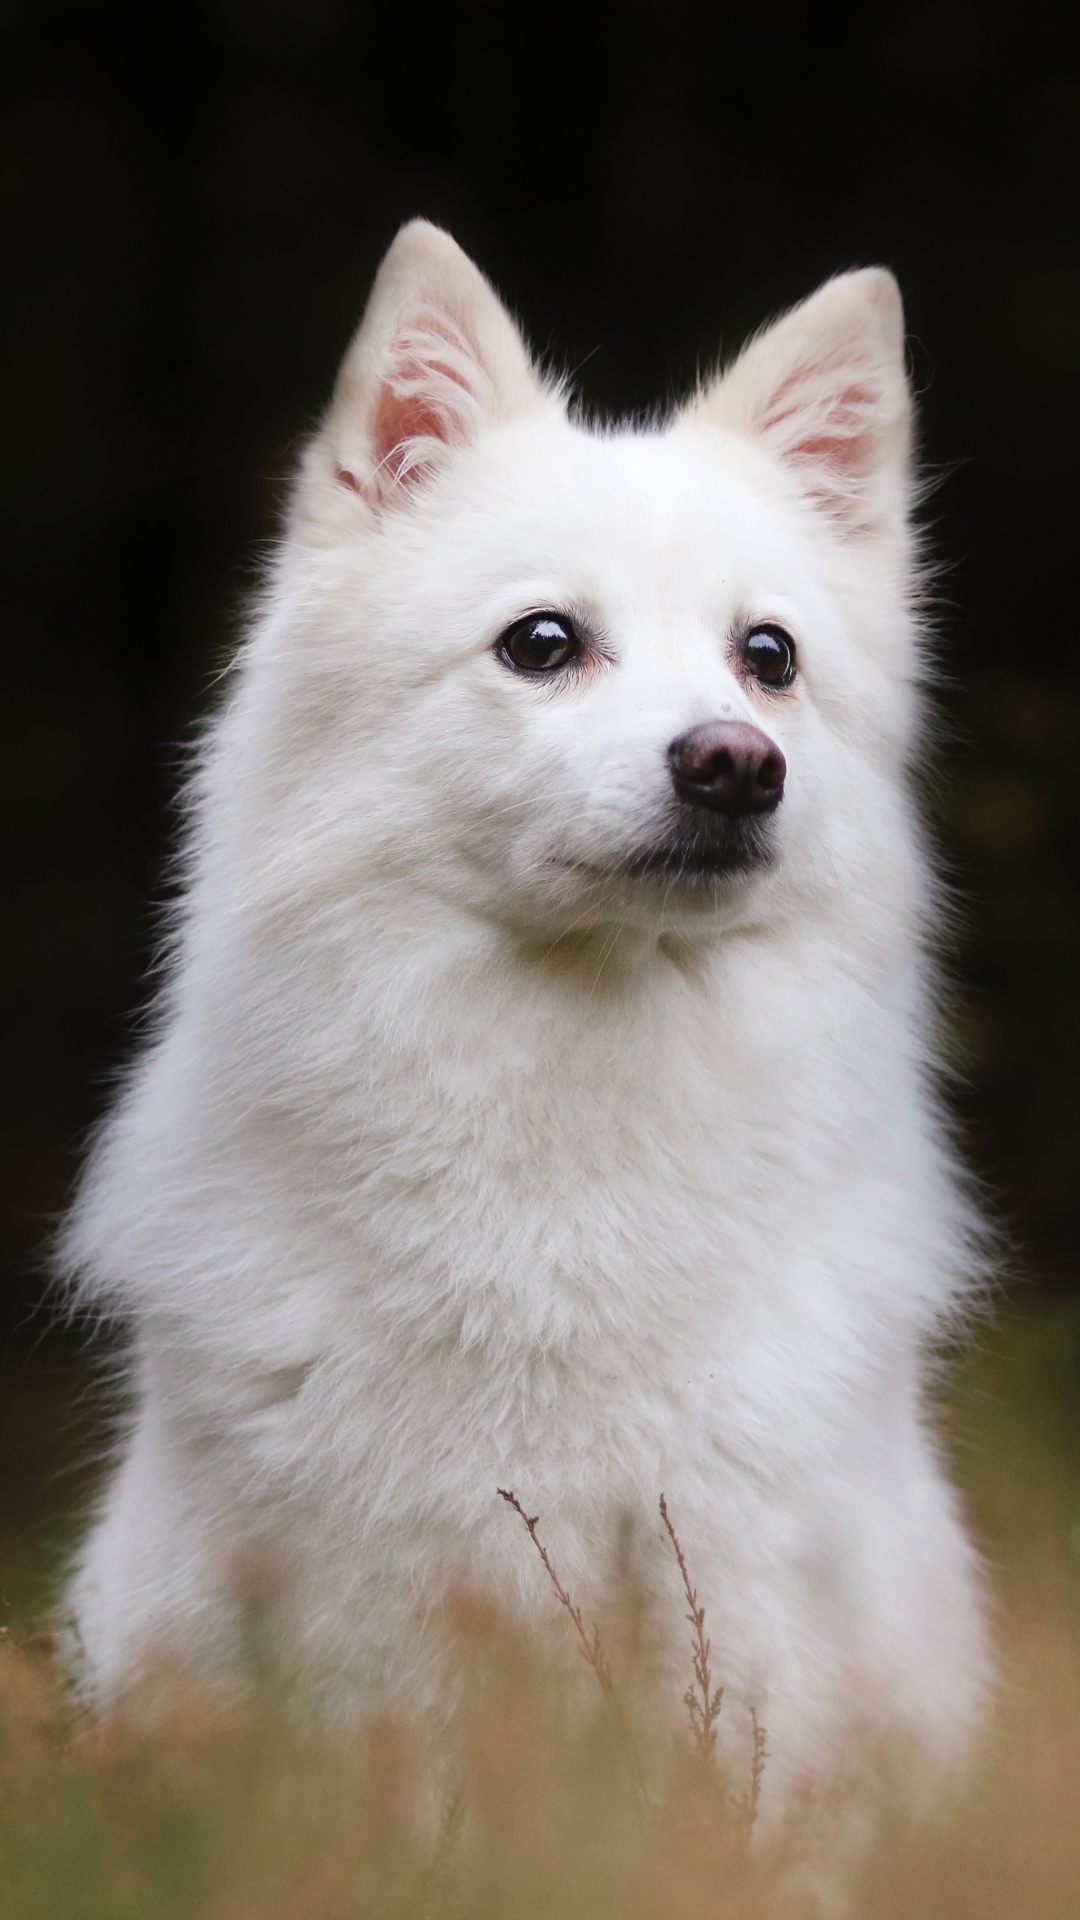 Скачать обои Американская Эскимосская Собака на телефон бесплатно